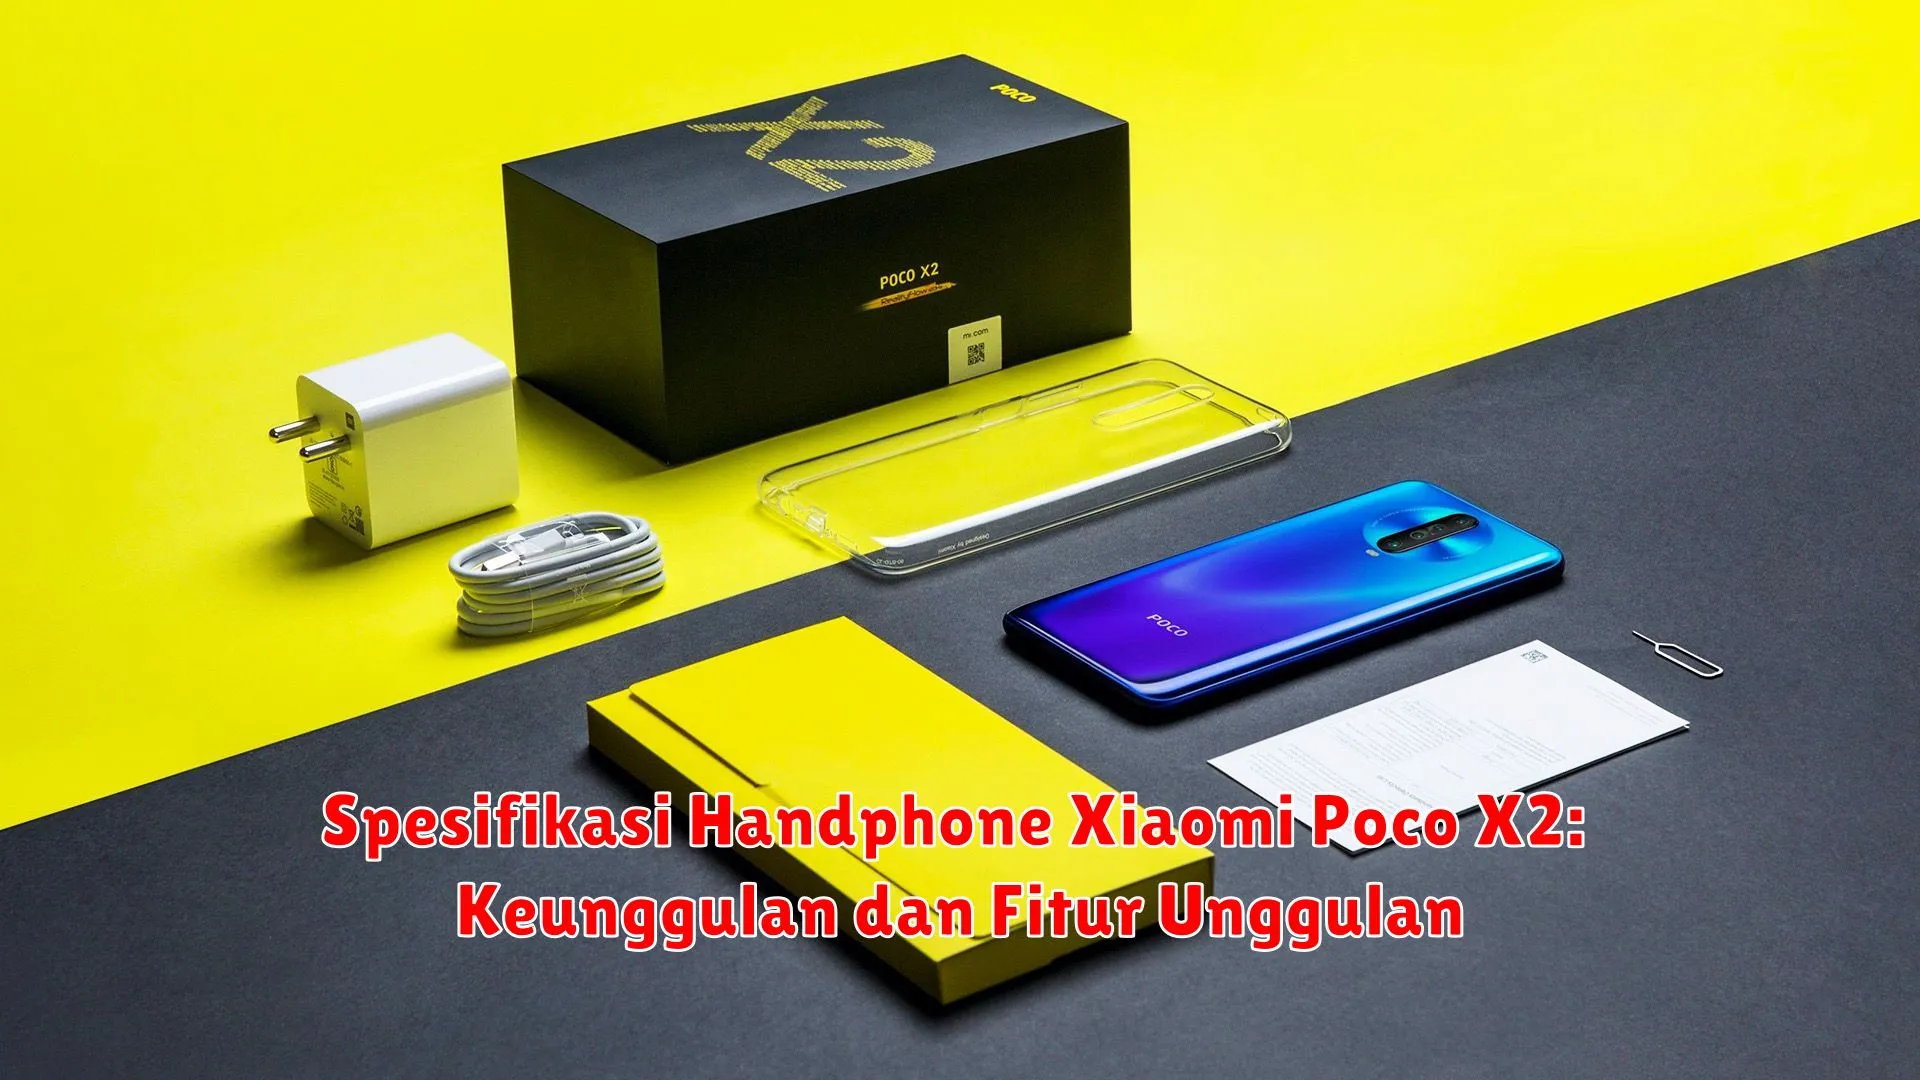 Spesifikasi Handphone Xiaomi Poco X2: Keunggulan dan Fitur Unggulan